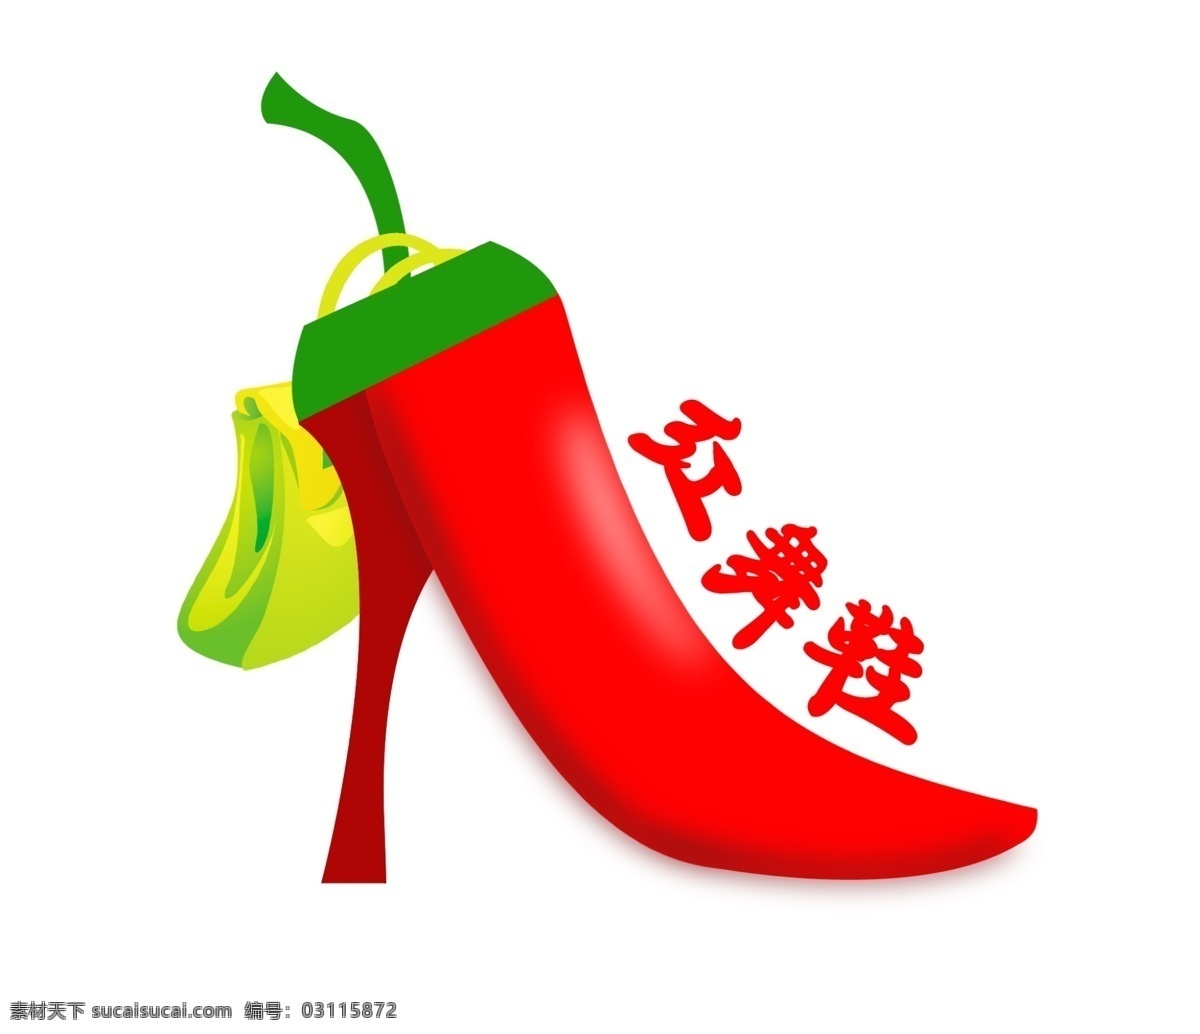 标志设计 购物袋 广告设计模板 辣椒 鞋子 鞋子logo 源文件 煳 栊 琹 ogo 红 舞鞋 logo 模板下载 红舞鞋 psd源文件